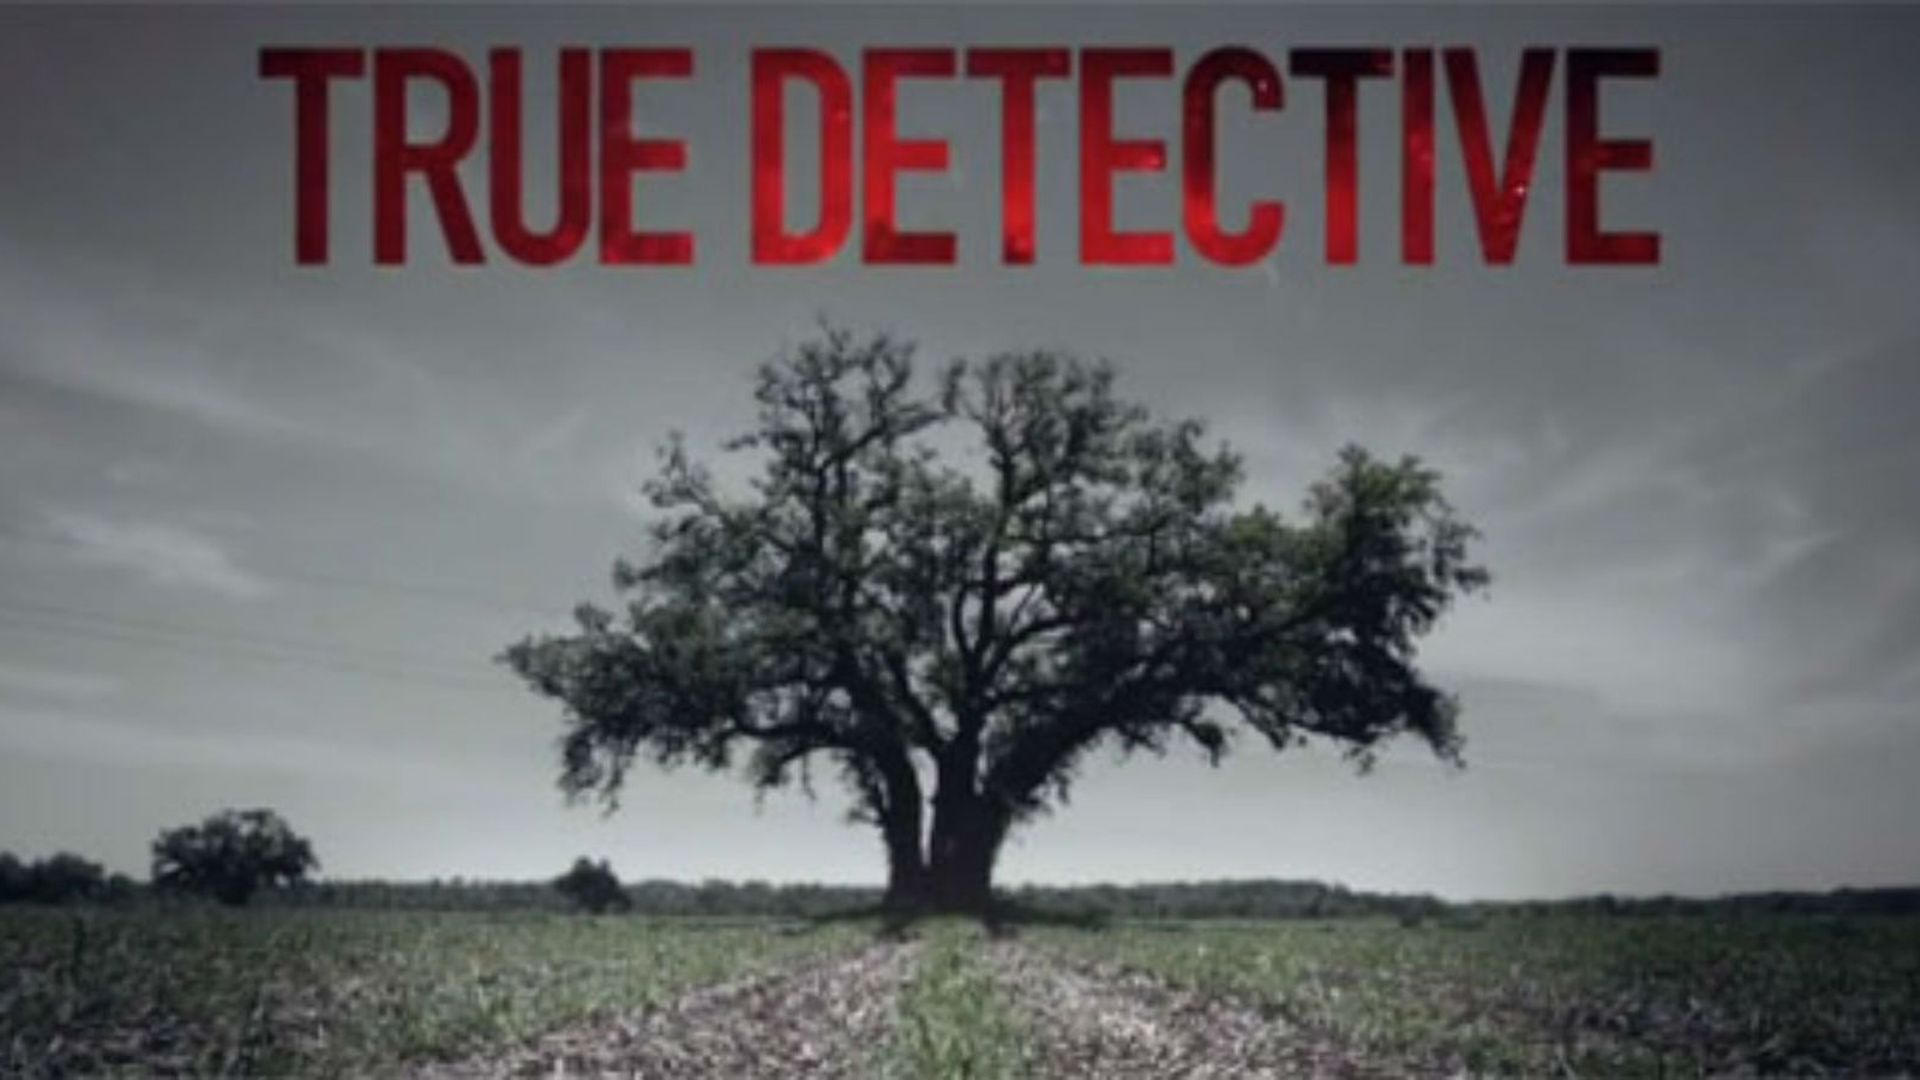 La toute première saison de "True Detective" diffusée sur HBO, avait reçu un franc succès critique